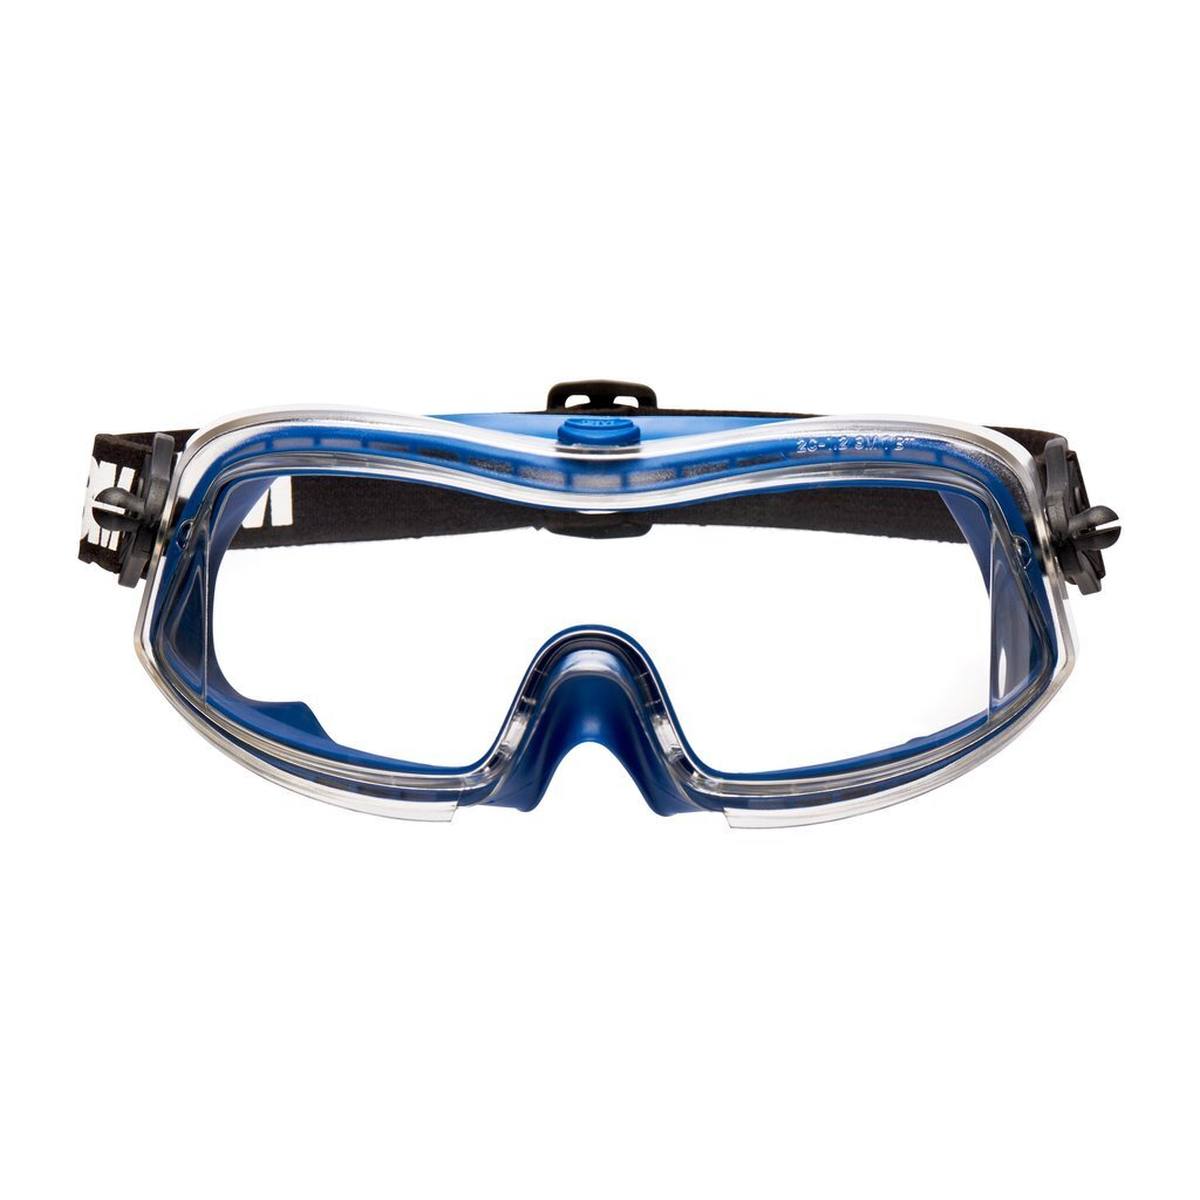 3M Gafas de protección Modul-R DX/UV, PC, transparentes, ligeras, perfil finoVentilación indirecta, cinta de nylon, incluye funda de microfibra ModulR